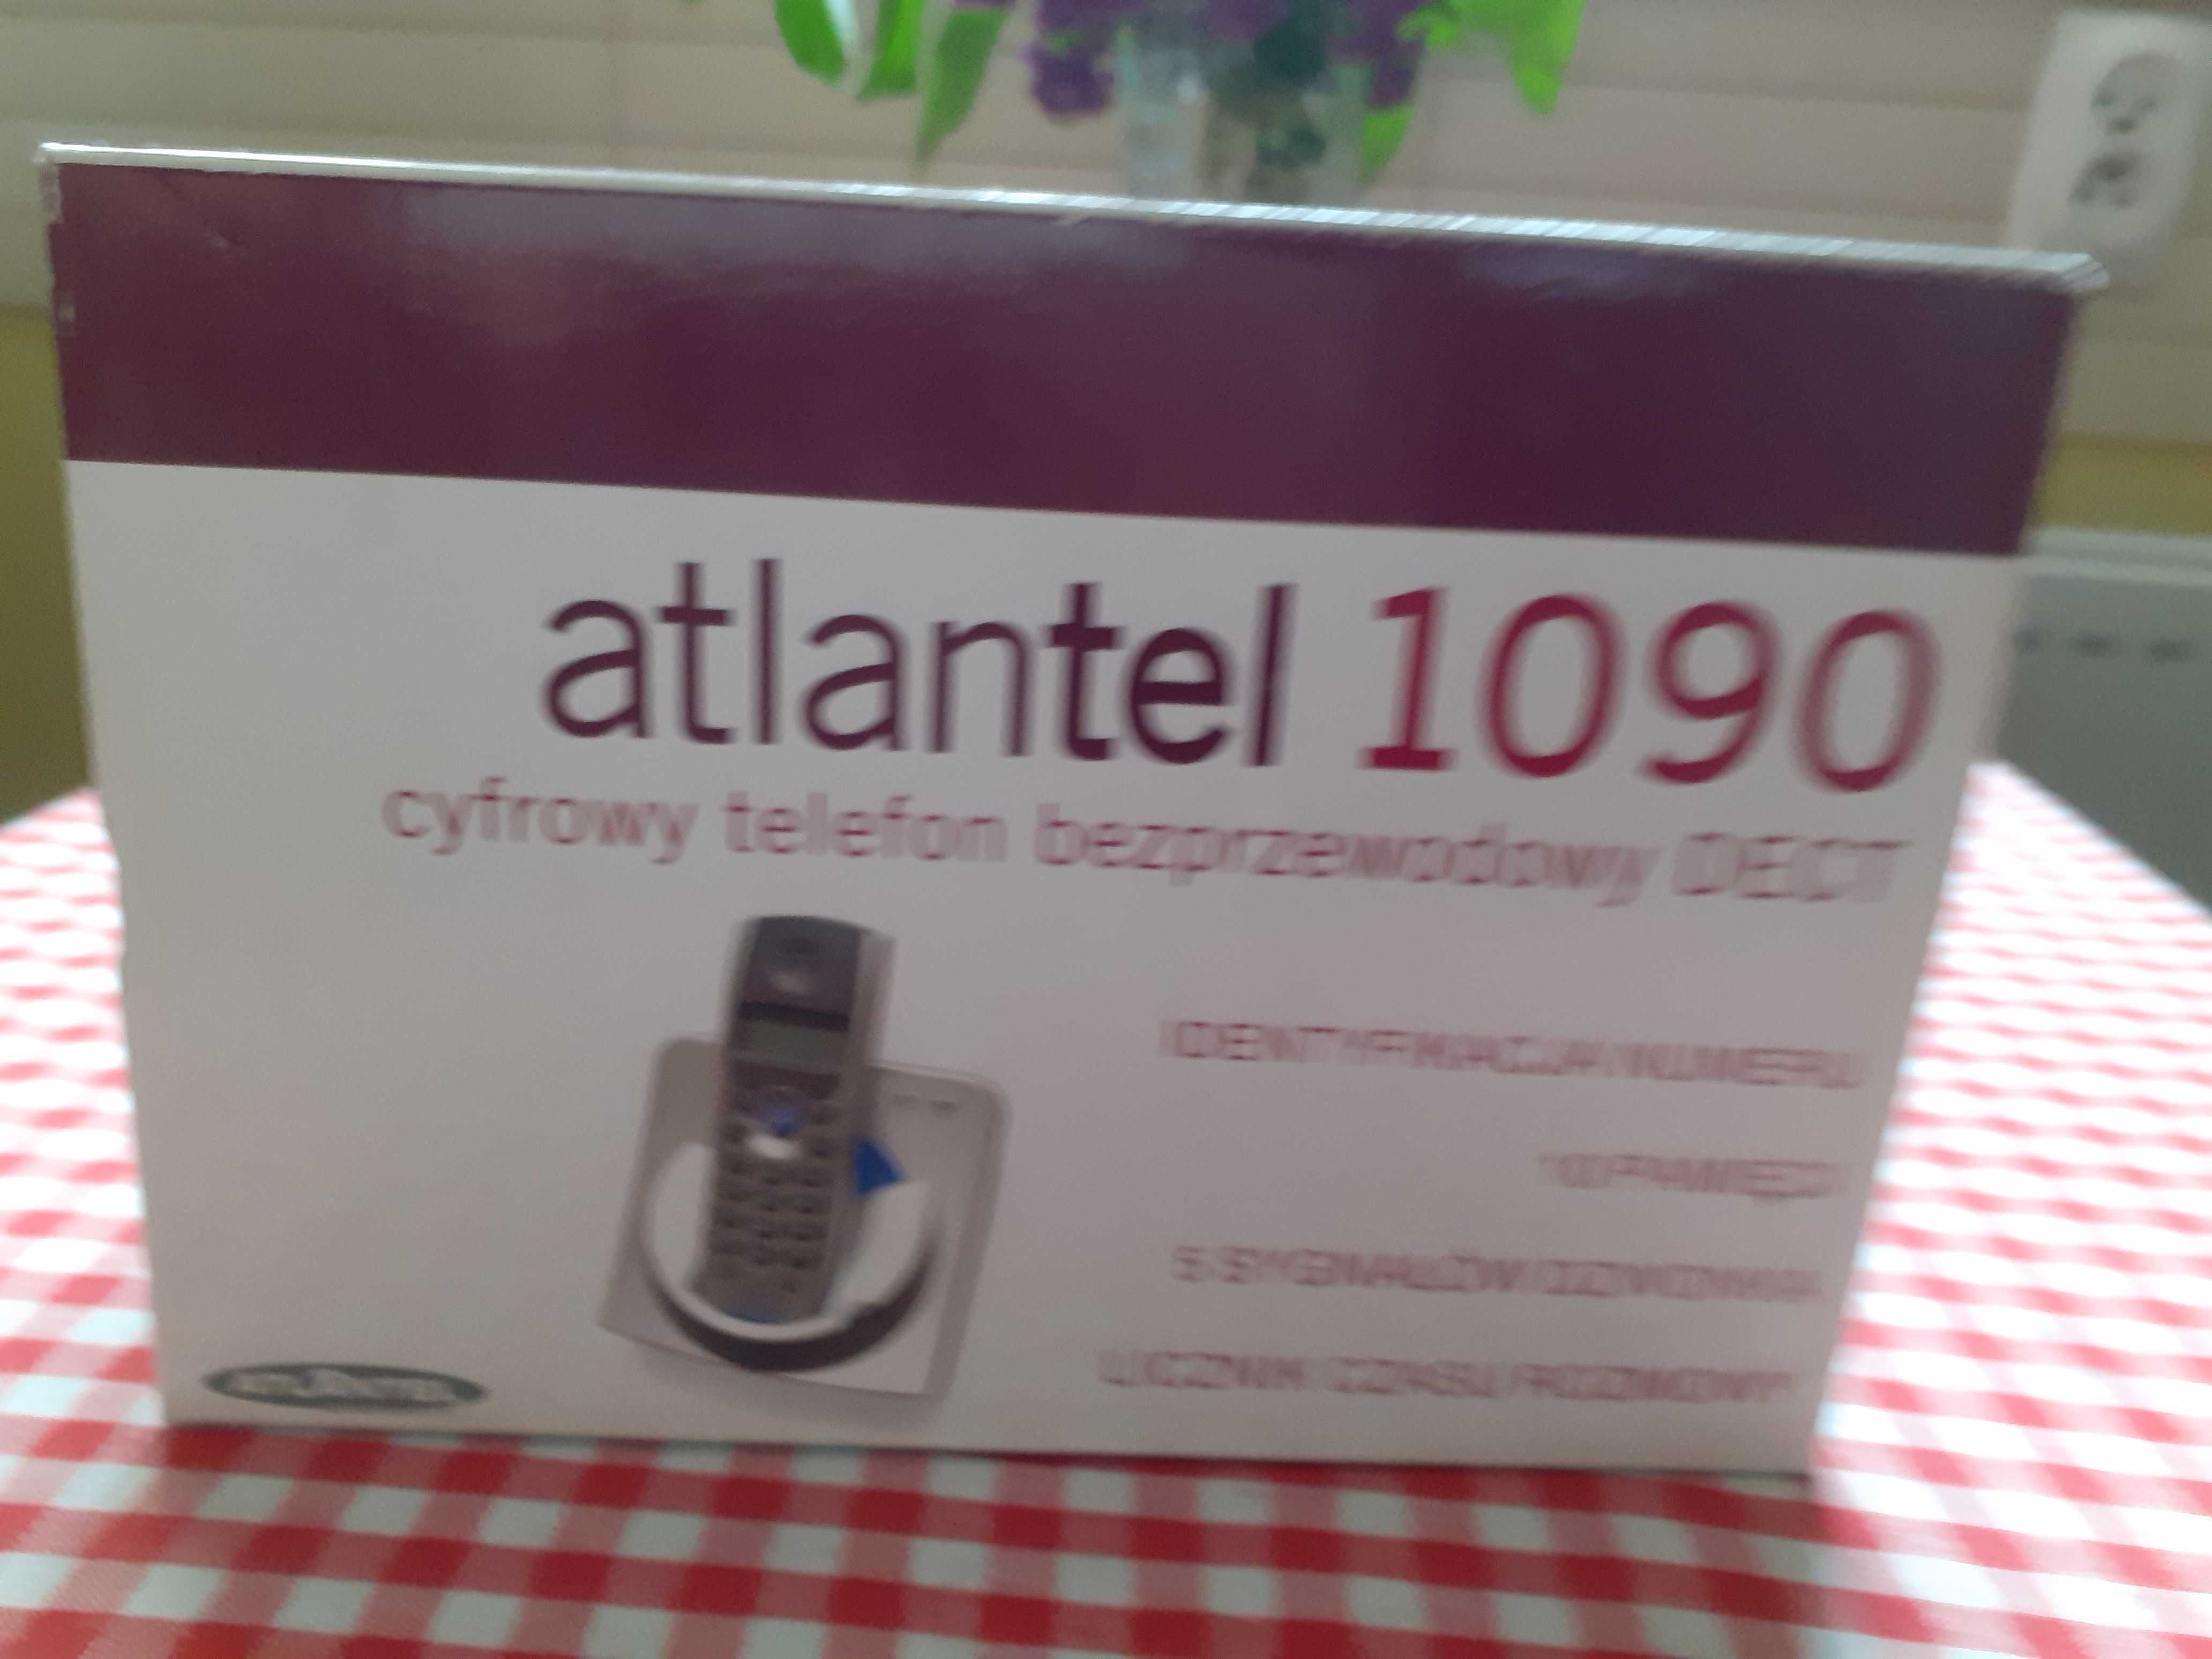 Telefon cyfrowy bezprzewodowy DECT Atlantel 1090